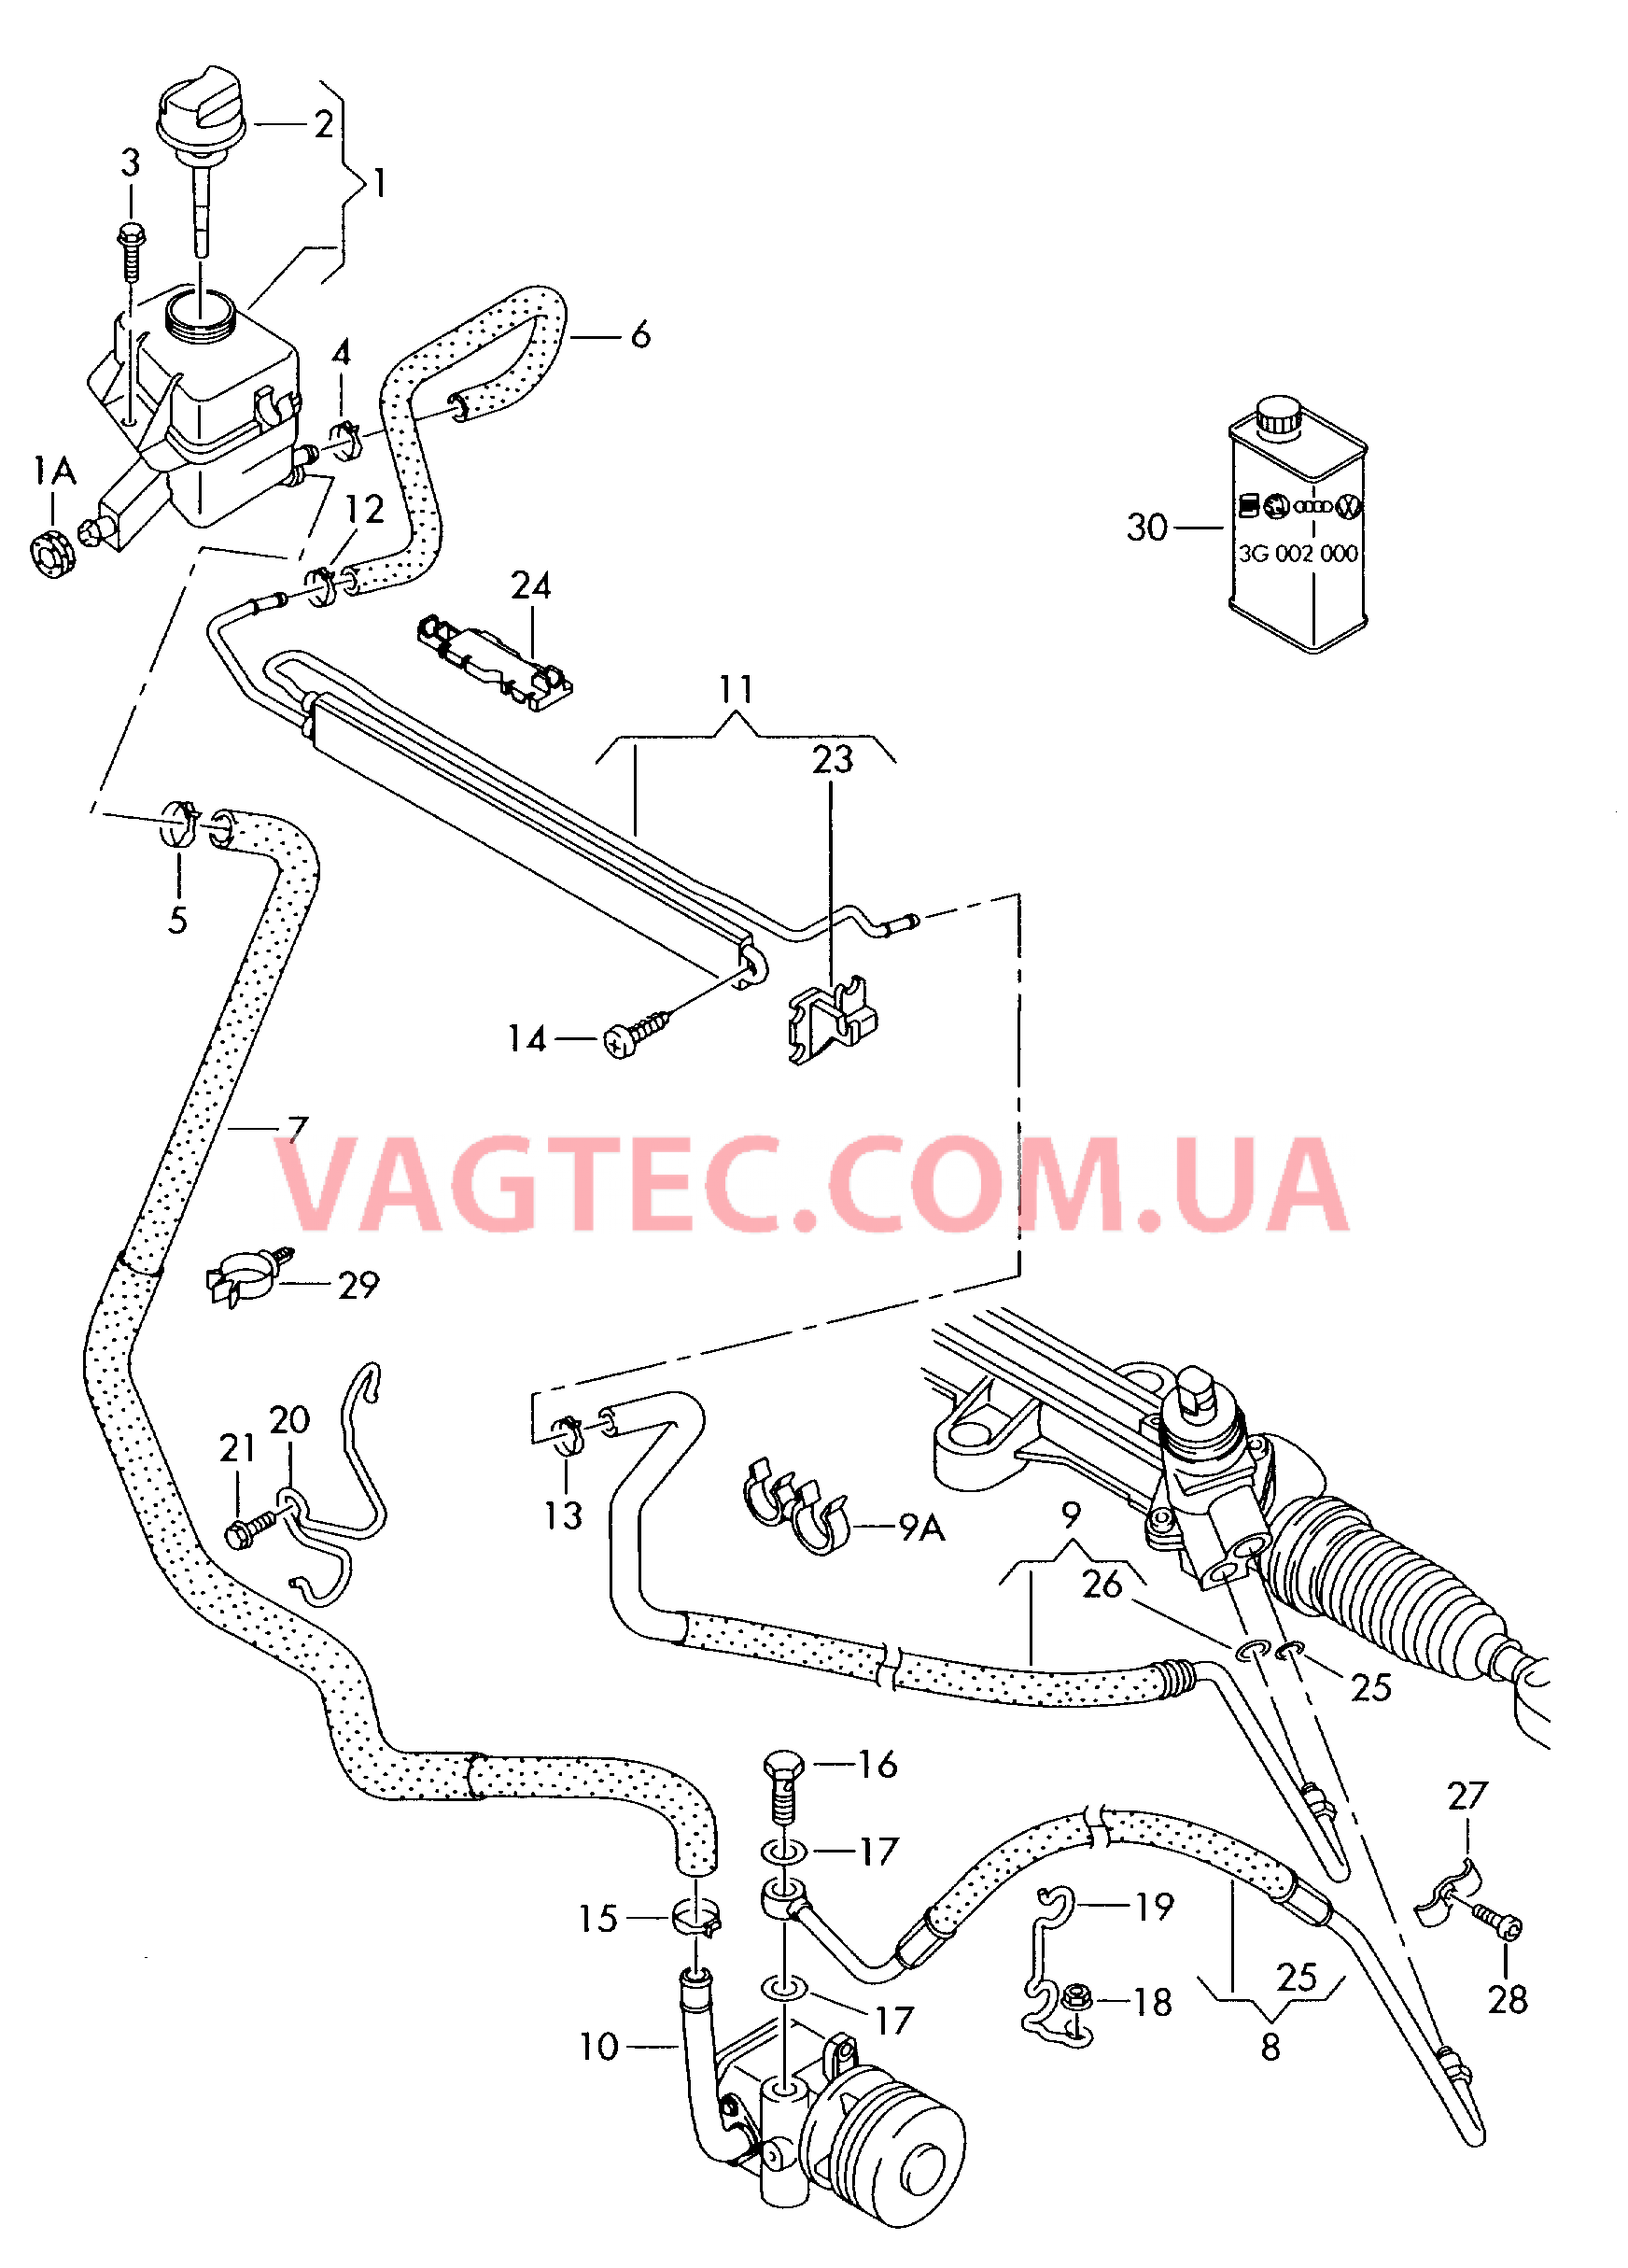 Масляный бачок с соединительными деталями, шлангами  для ГУРа  для VOLKSWAGEN Transporter 2003-1